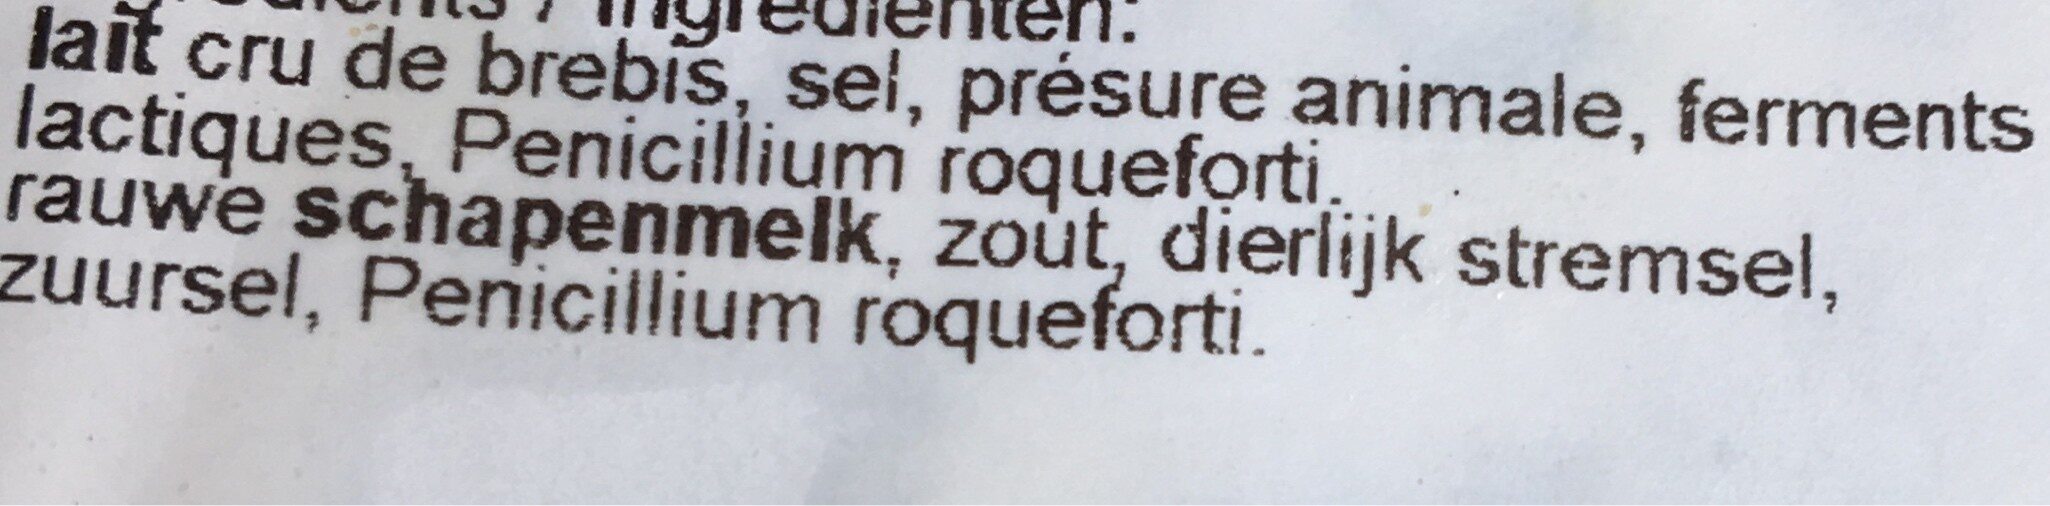 Roquefort - Ingredients - fr